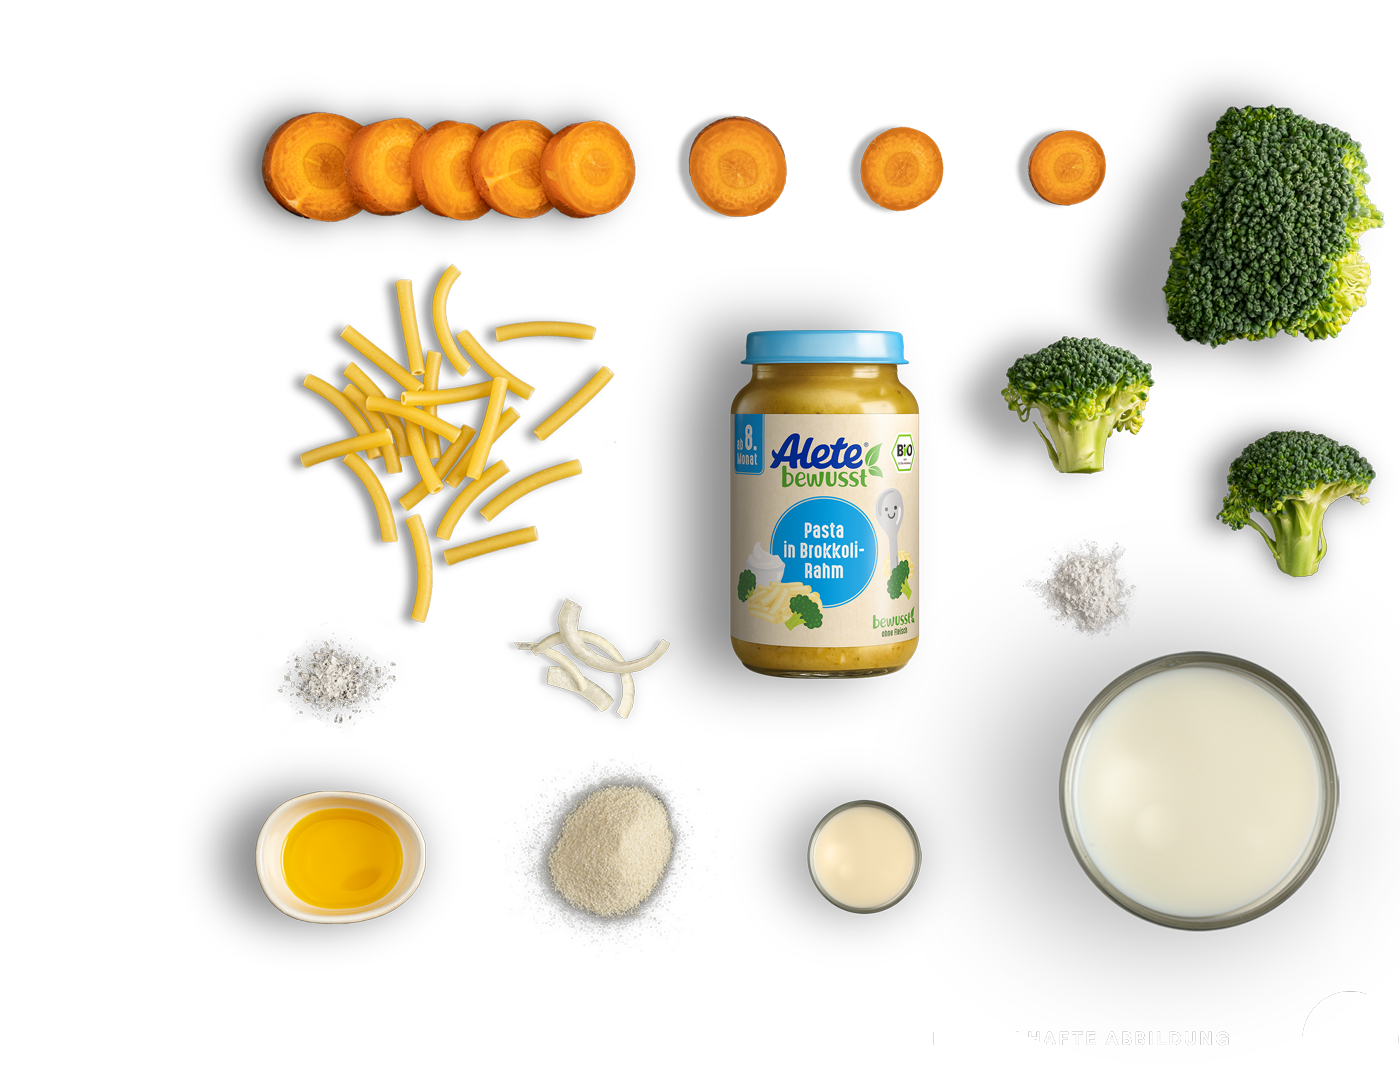 Alete bewusst Zusammensetzung Gläschen Menü Pasta Broccoli Rahm